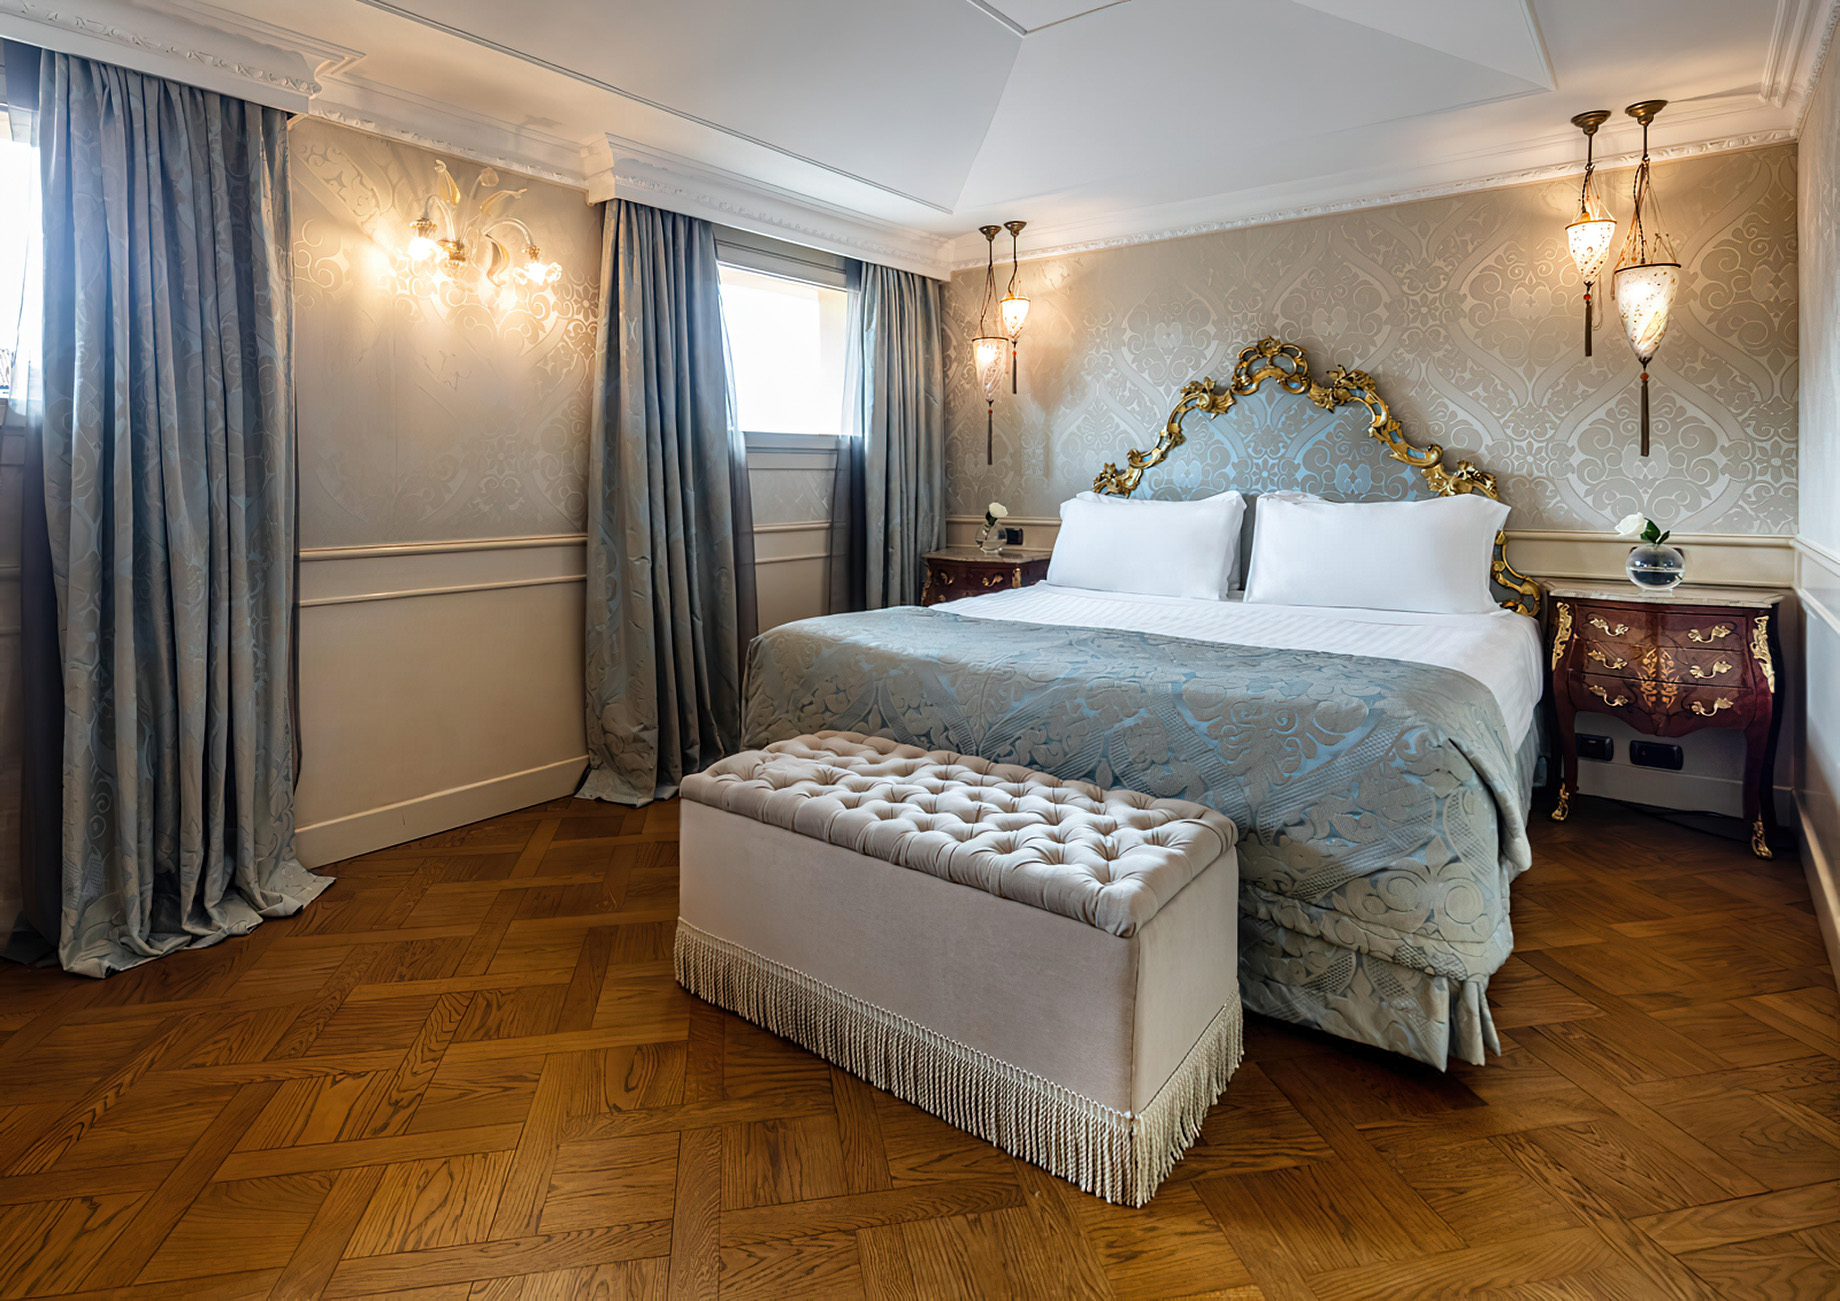 Baglioni Hotel Luna, Venezia – Venice, Italy – Goldoni Family Suite Bedroom